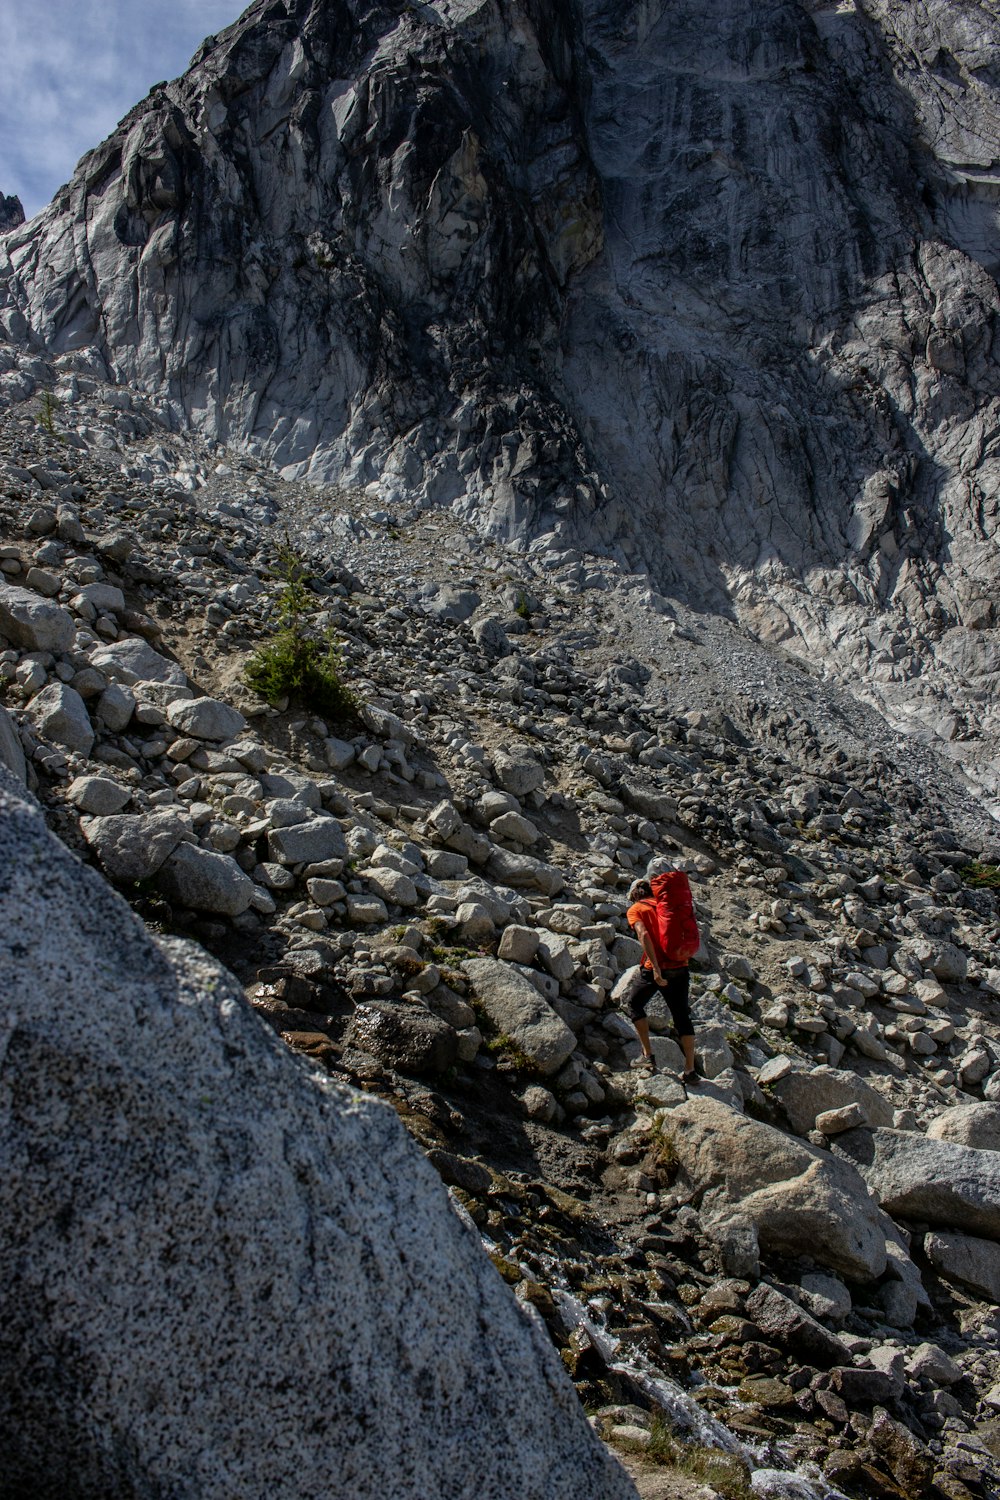 a person walking on a rocky terrain